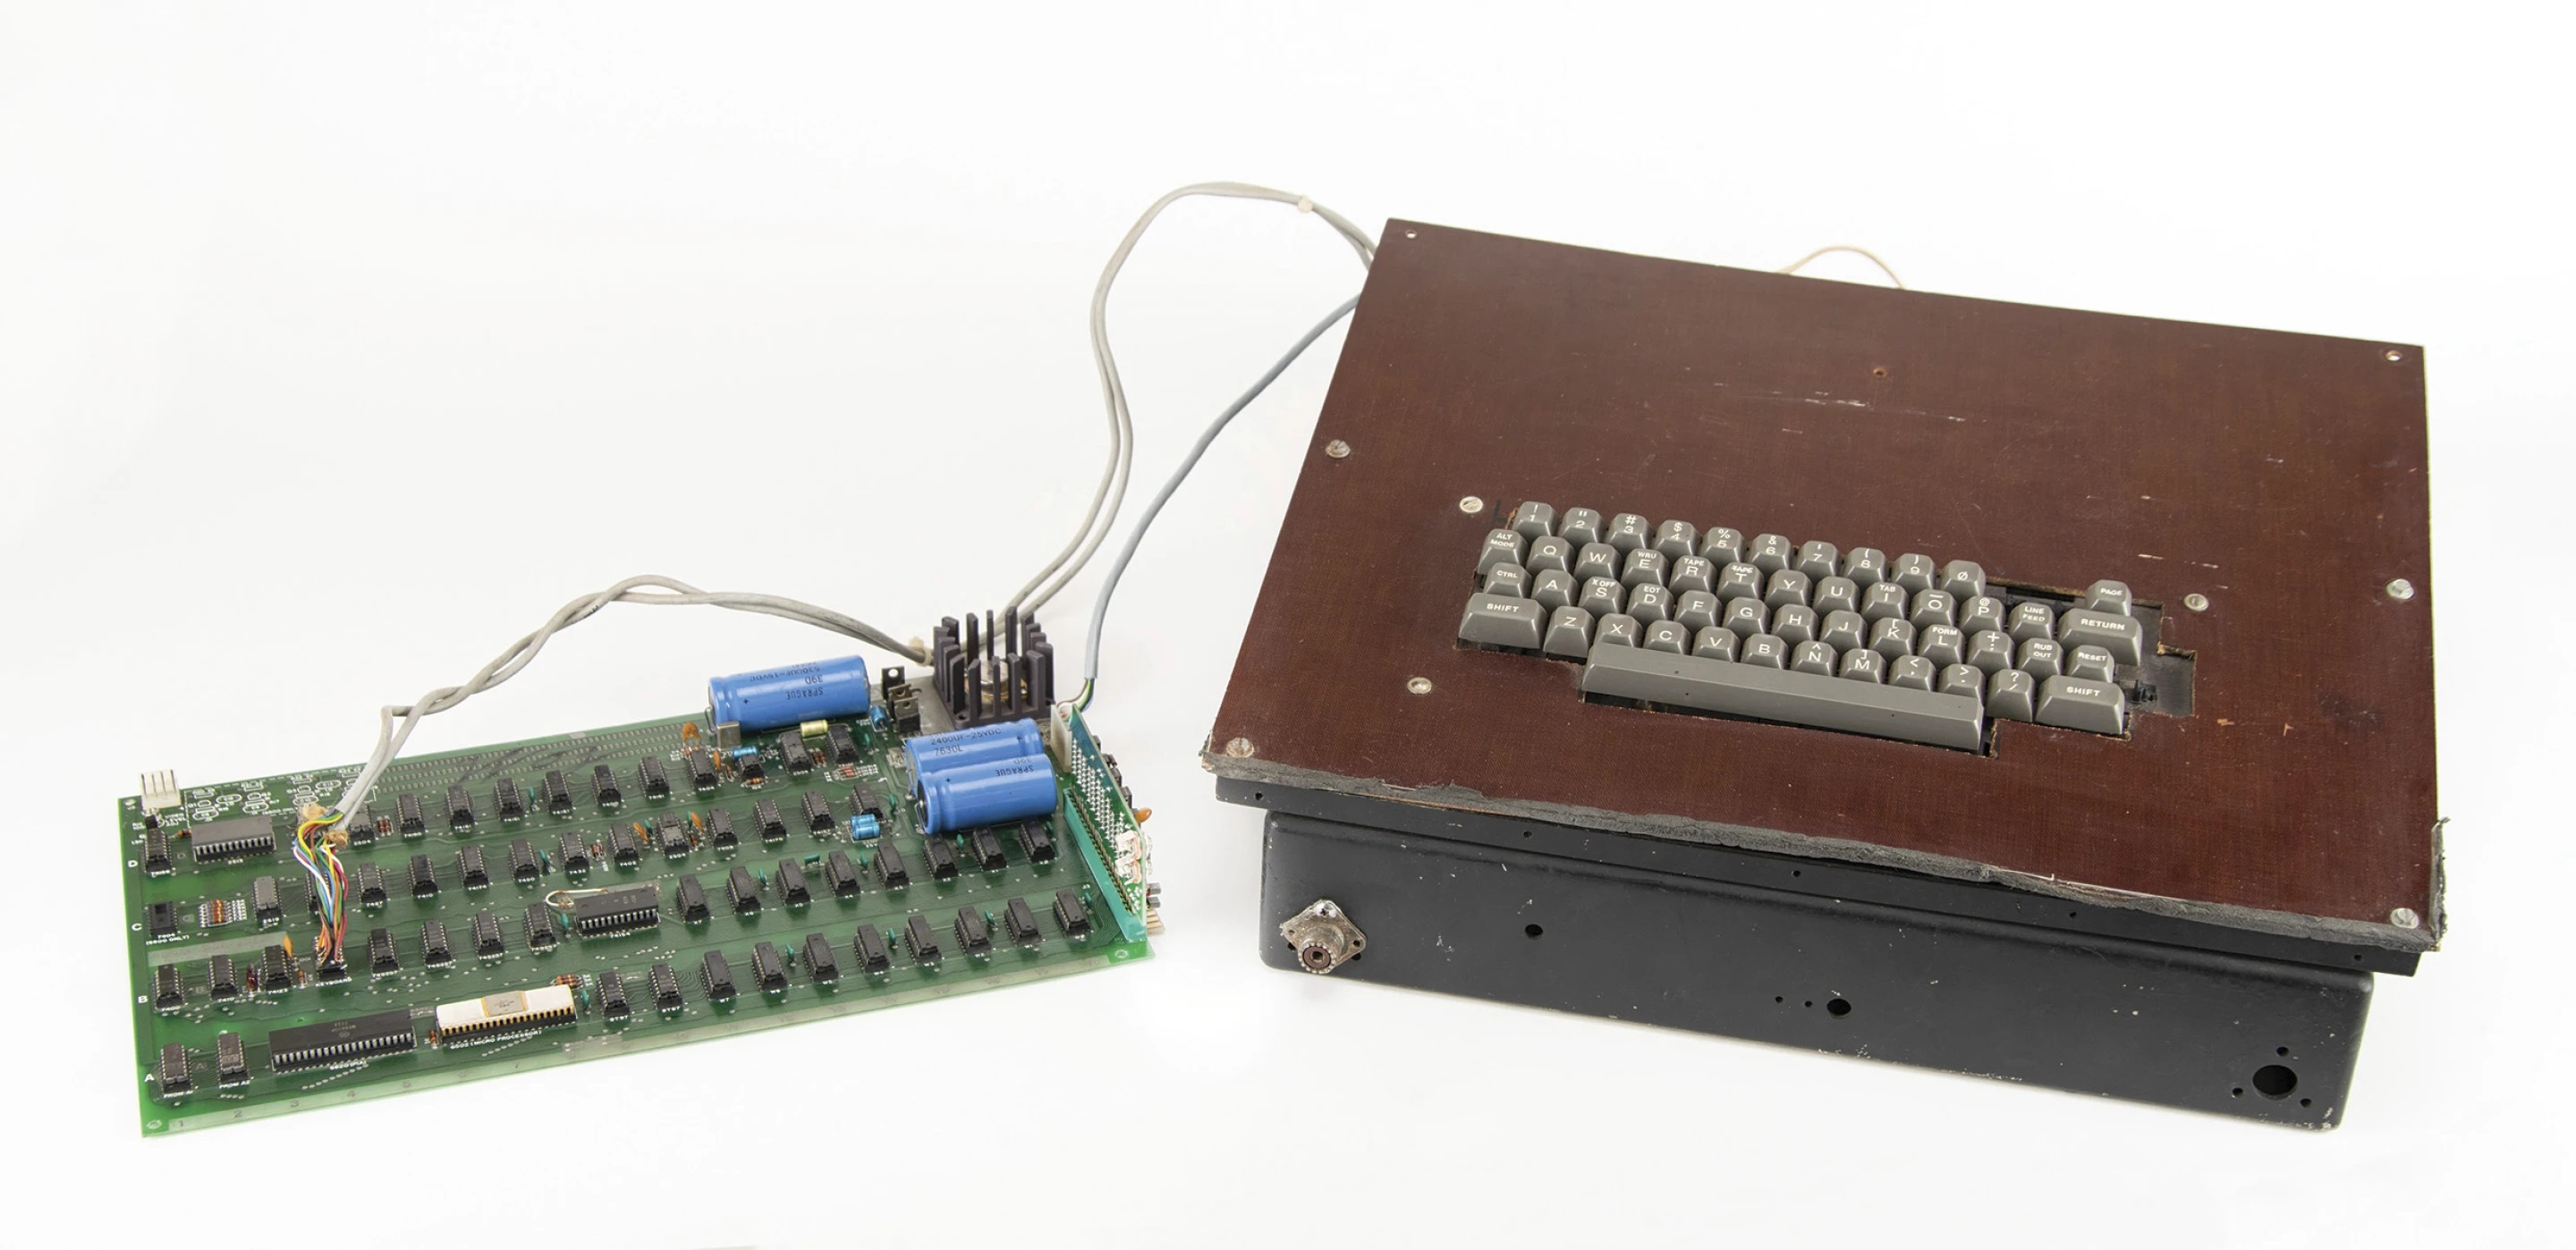 Apples erster Computer aus den 70er Jahren wird versteigert - er soll für 200.000 Dollar verkauft werden